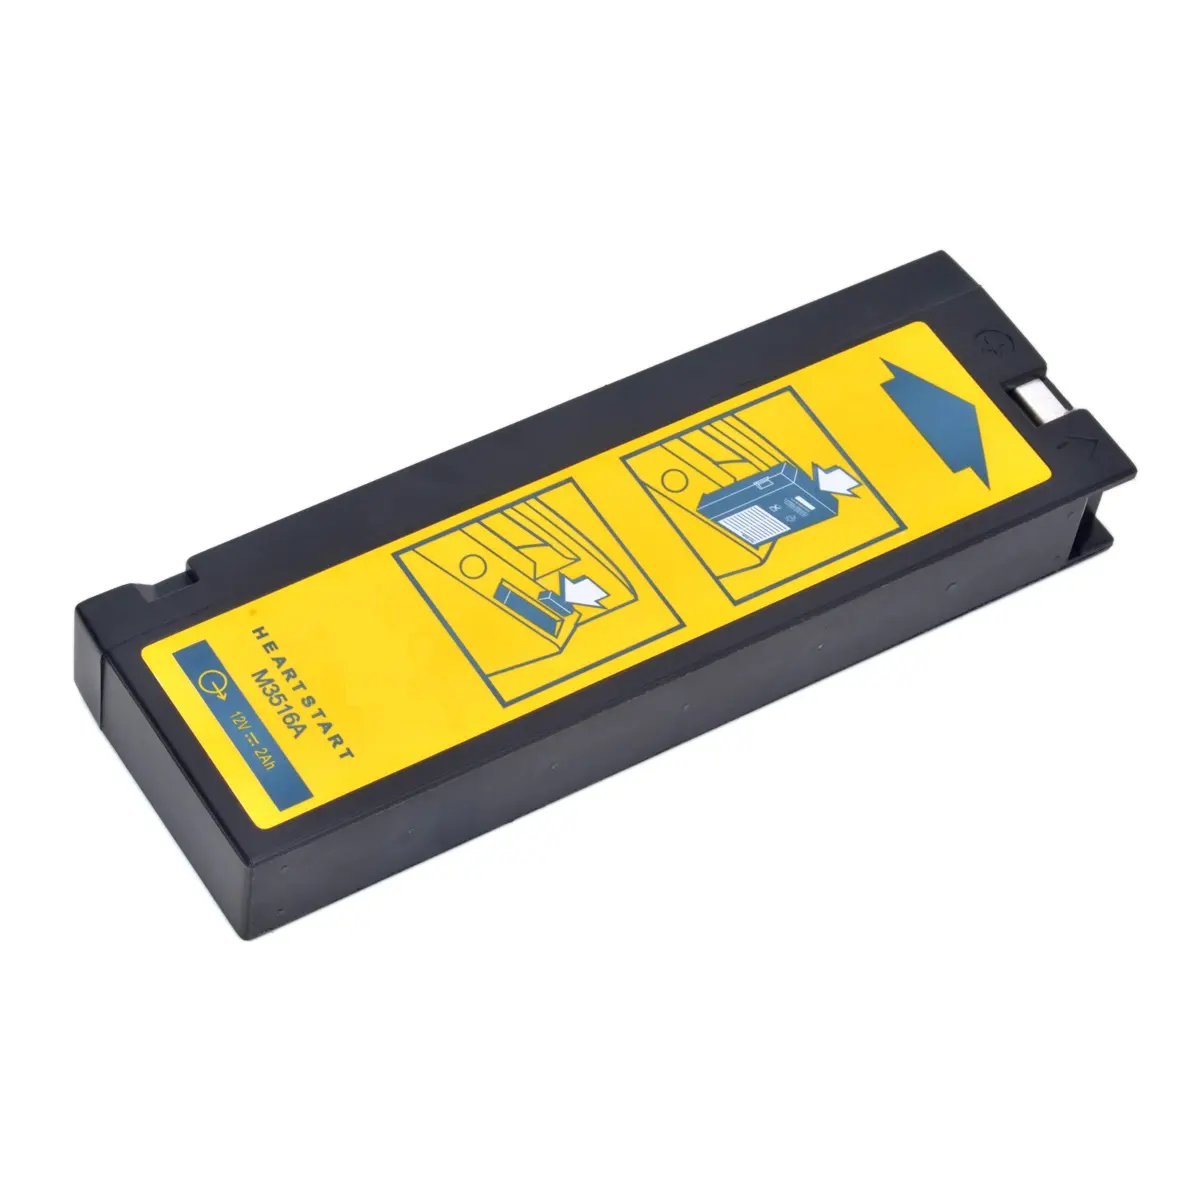 Batterie rechargeable M3516A compatible avec le défibrillateur Philips M3516A M4735A Heartstart XL M4735A 861266